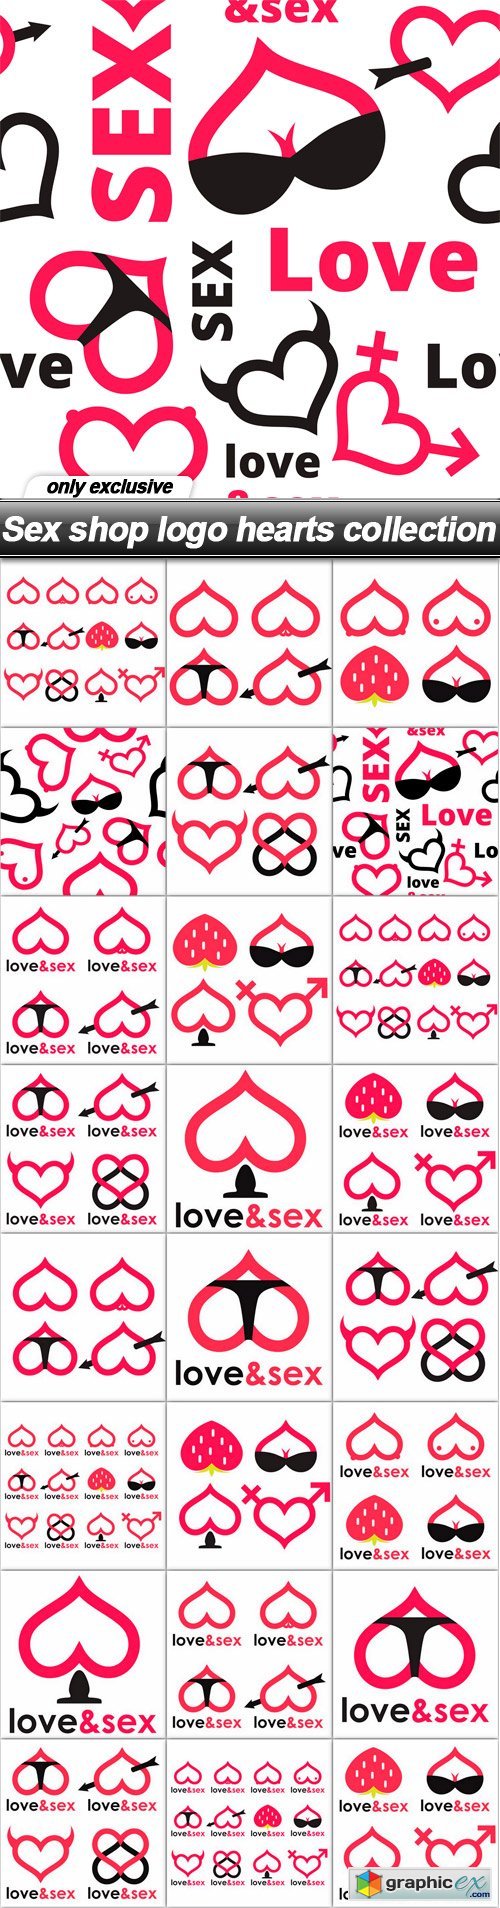 Sex shop logo hearts collection - 25 EPS